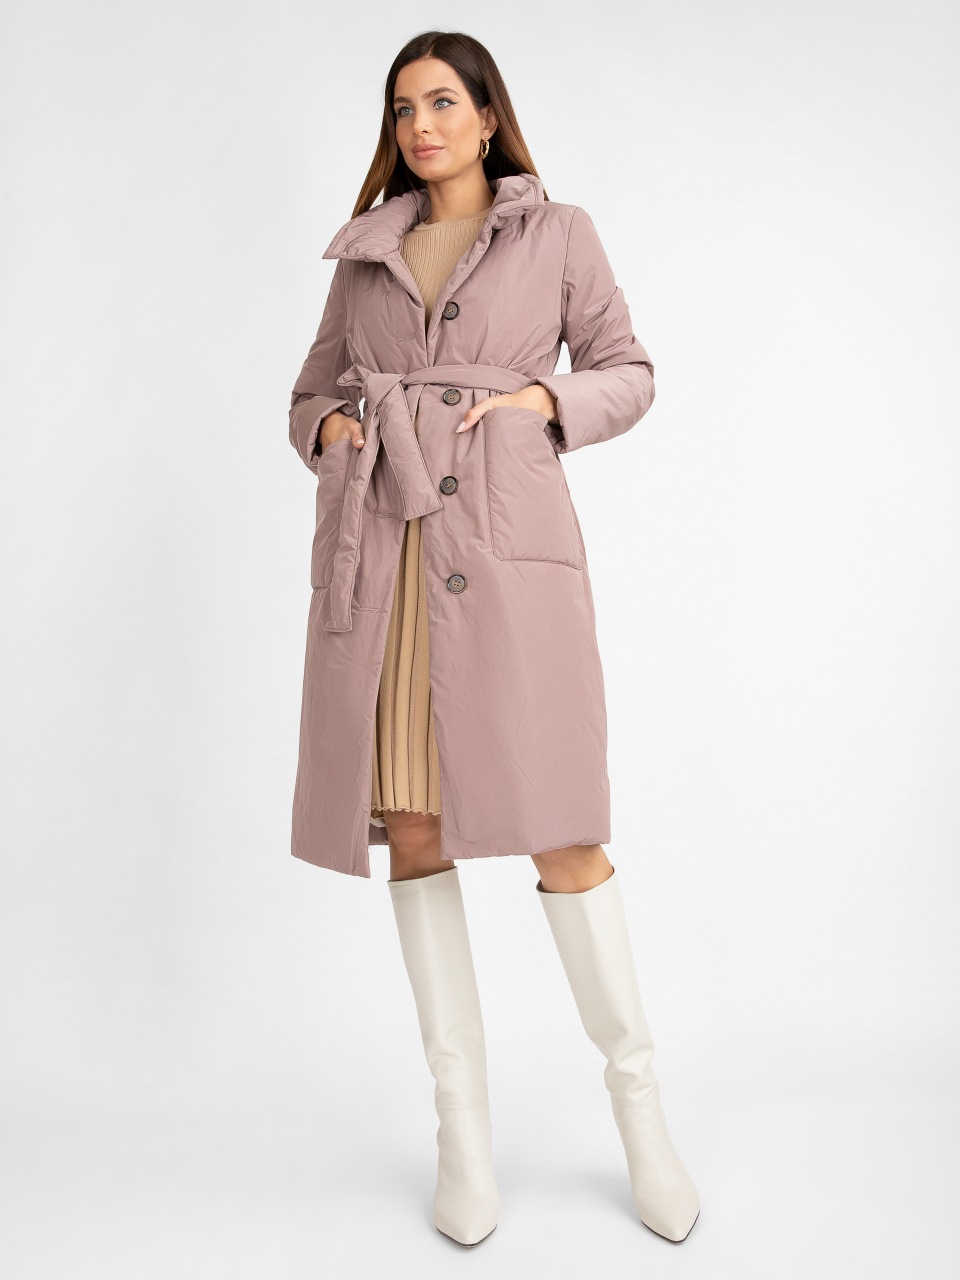 Пальто женское ElectraStyle 5У-2111-112 розовое 48 RU